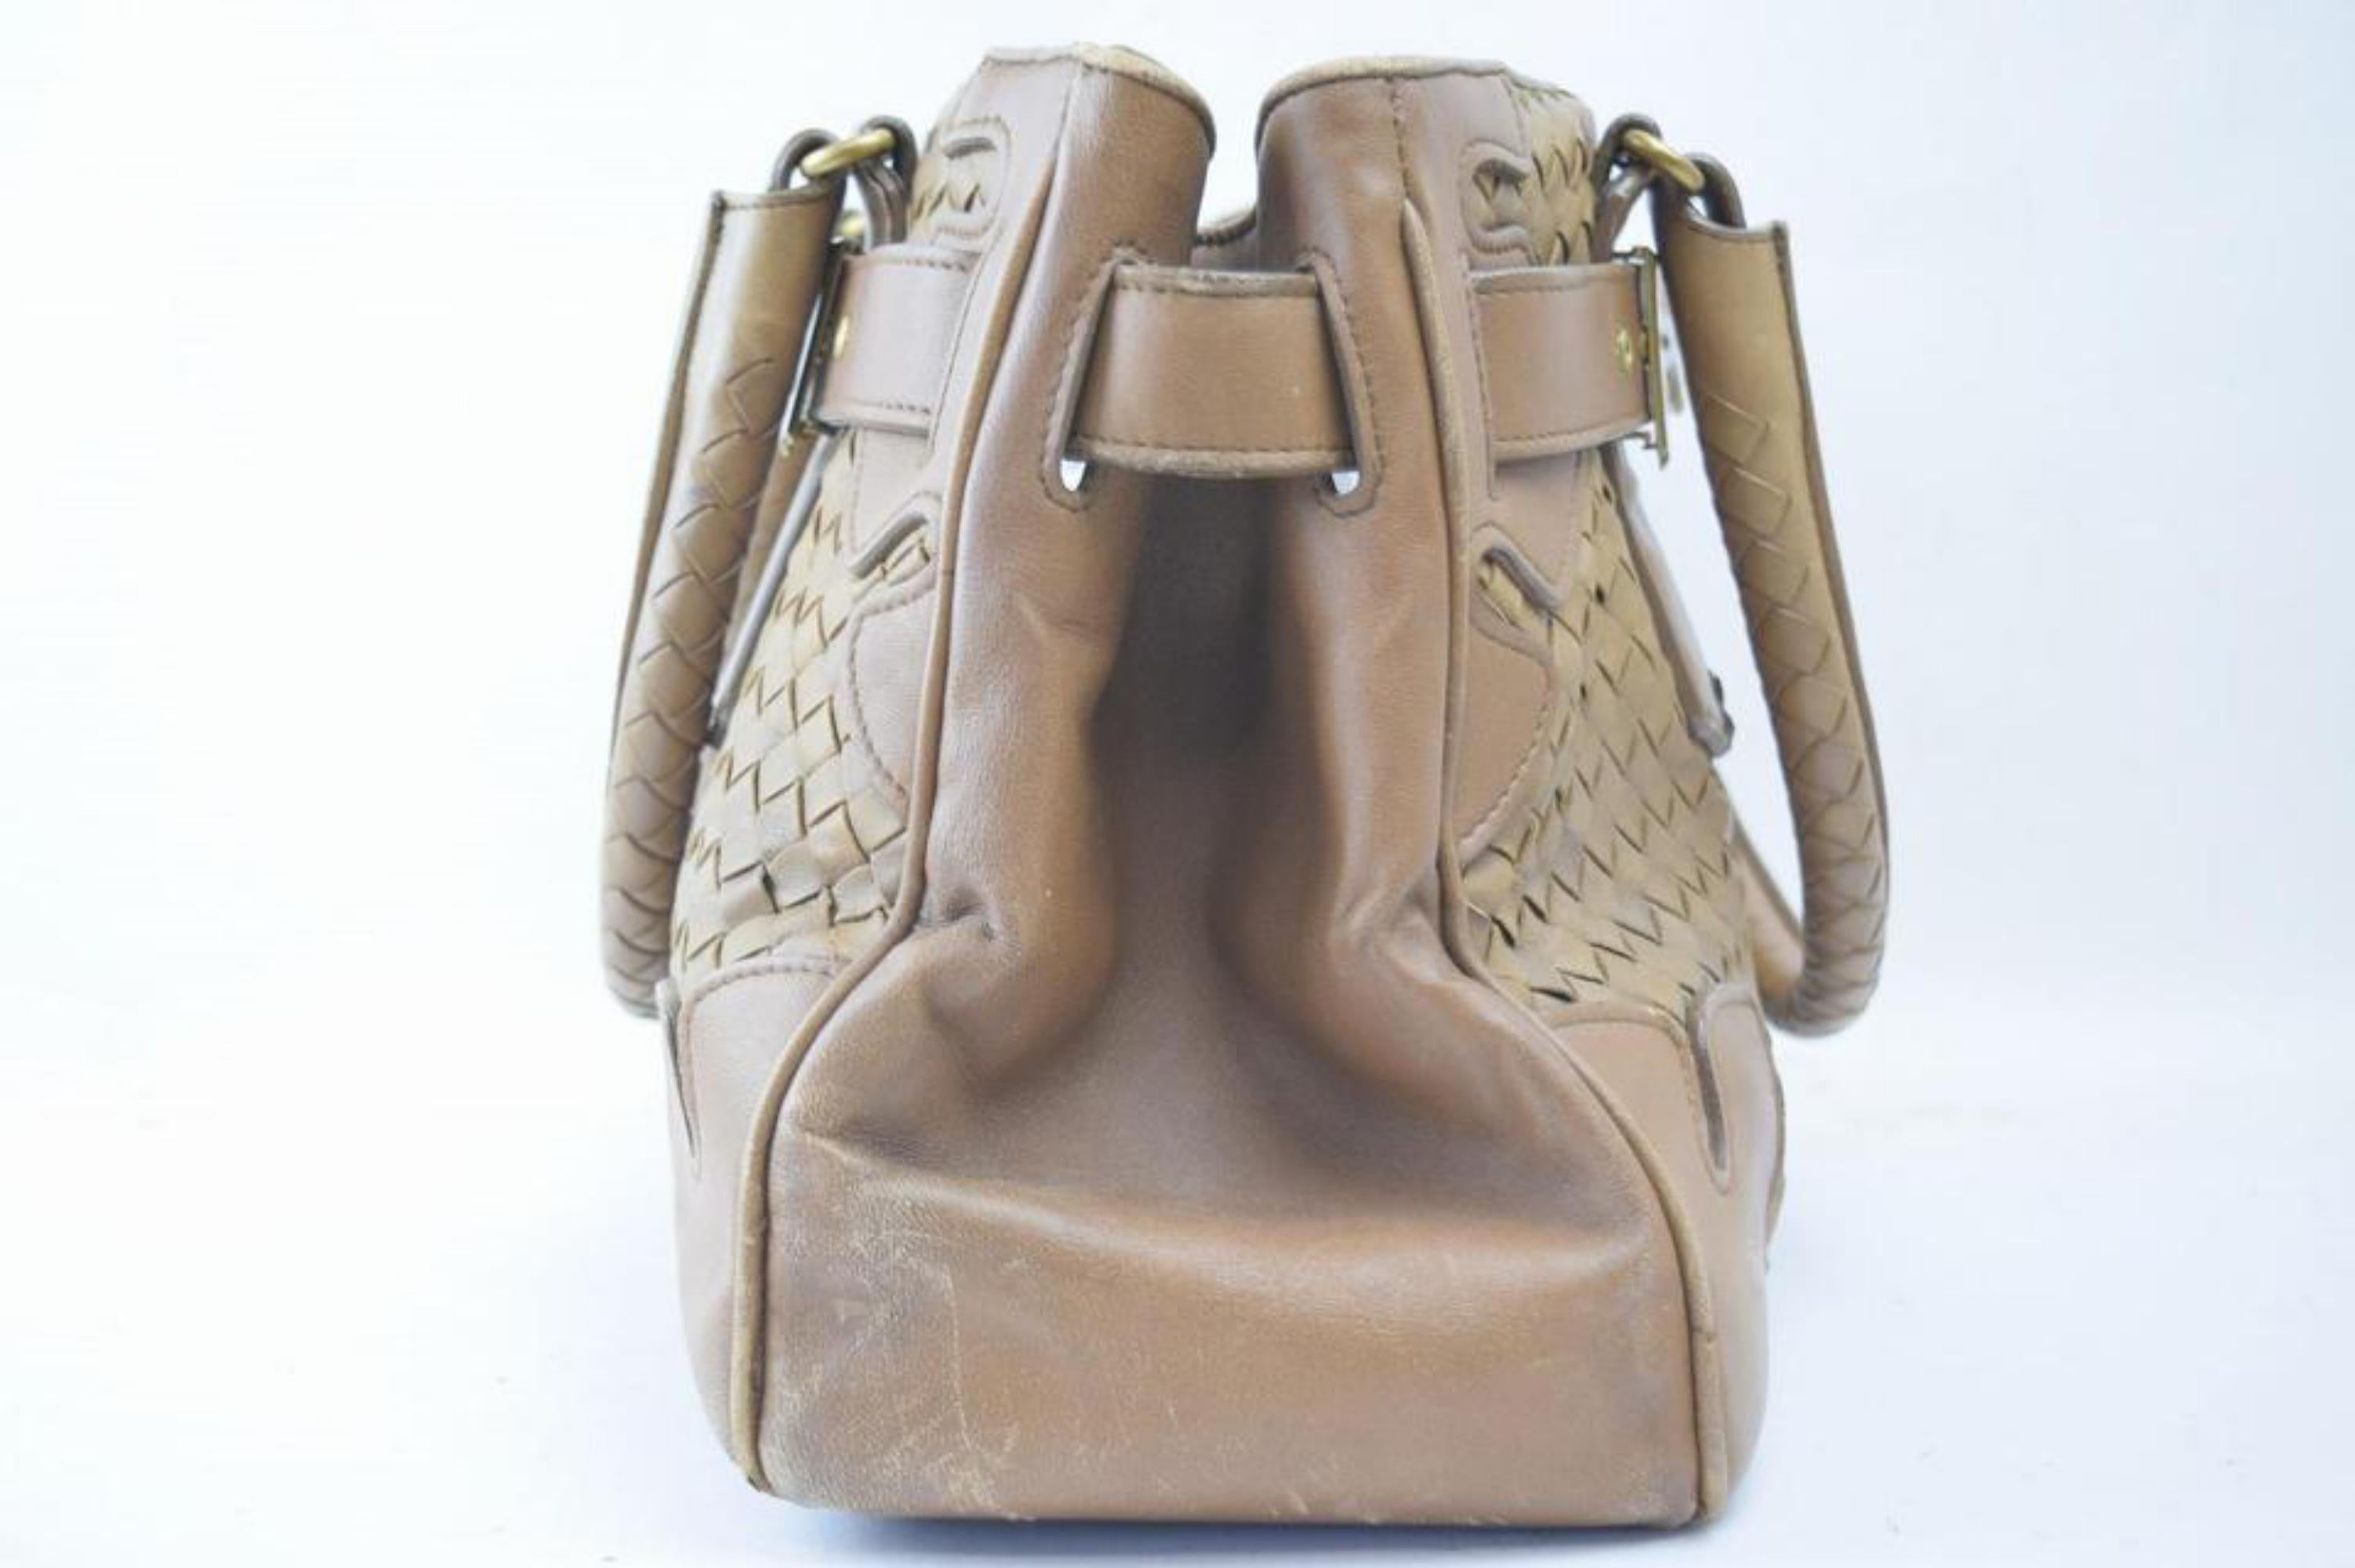 Bottega Veneta Intrecciato Woven Tote 865639 Brown Patent Leather Shoulder Bag For Sale 3